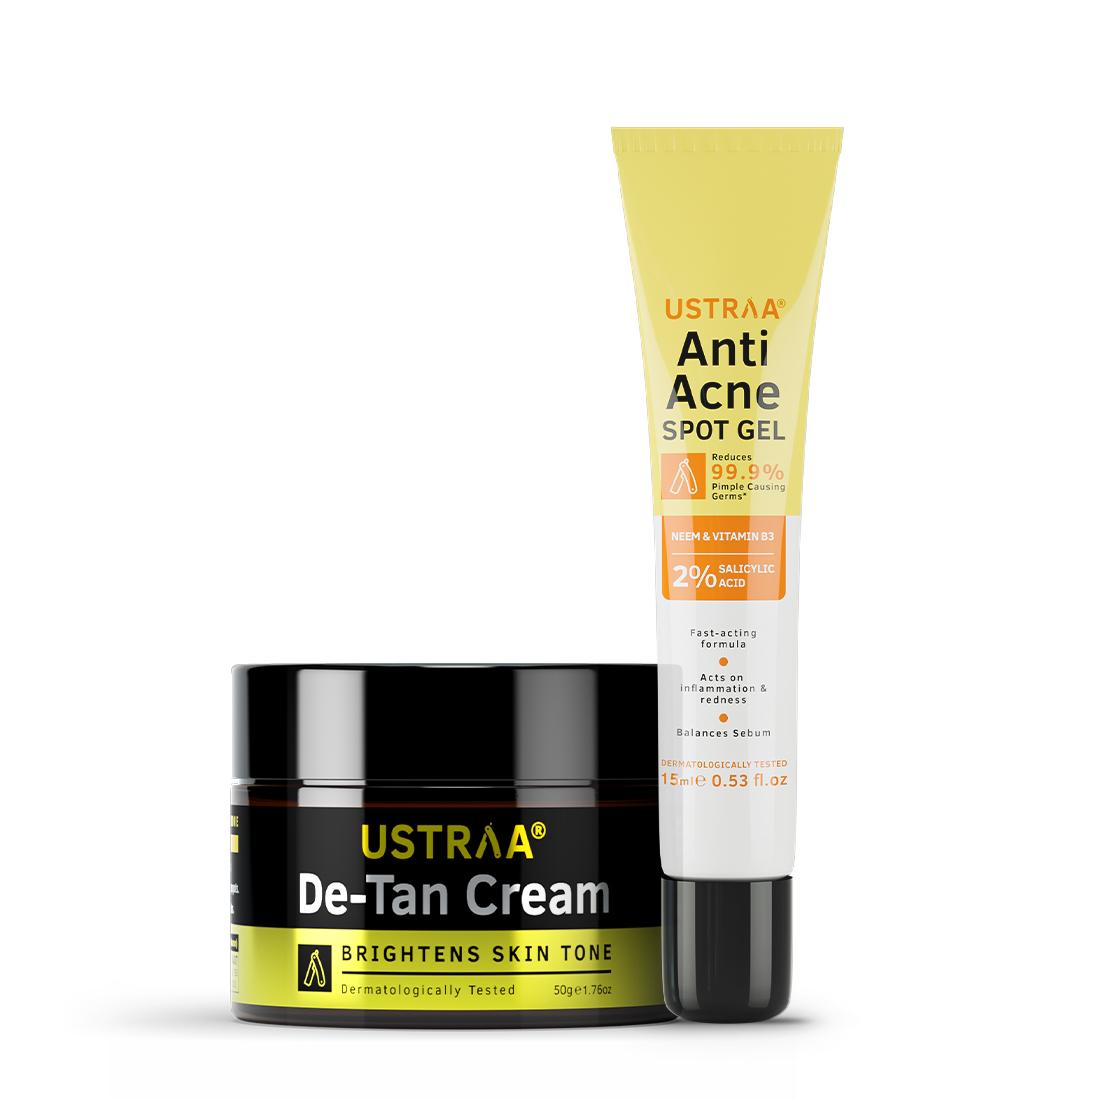 Anti Acne Spot Gel & De Tan Cream